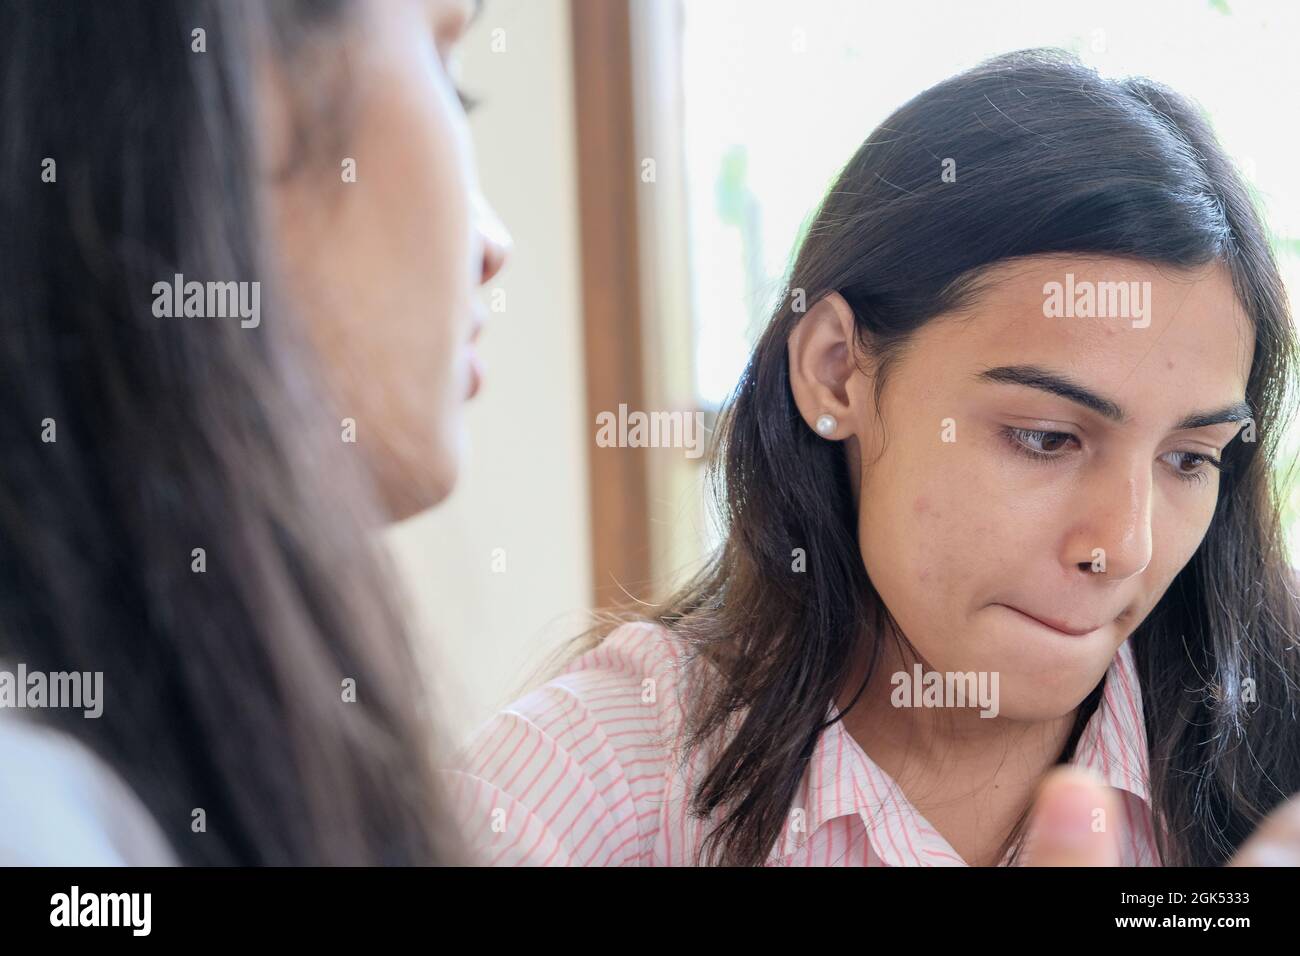 Nahaufnahme des Gesichtsausdrucks eines Mädchens während des Gesprächs Stockfoto